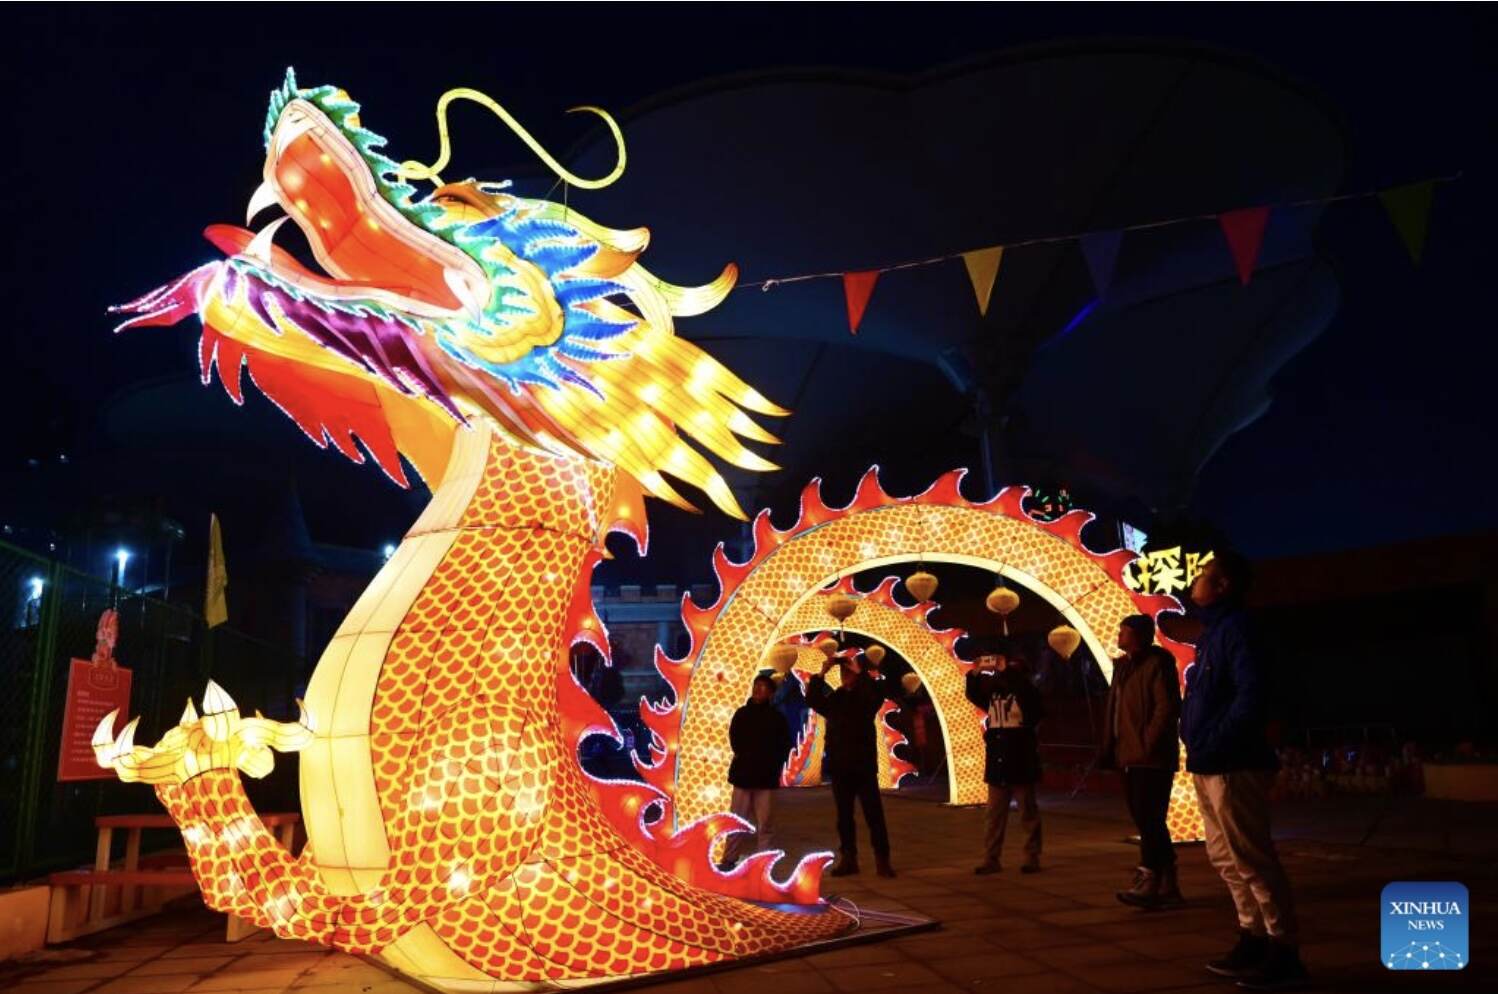 Chương trình trình diễn đèn lồng để chào mừng Tết Nguyên đán ở thành phố Liêu Thành, tỉnh Sơn Đông, phía đông Trung Quốc. Ảnh: Xinhua